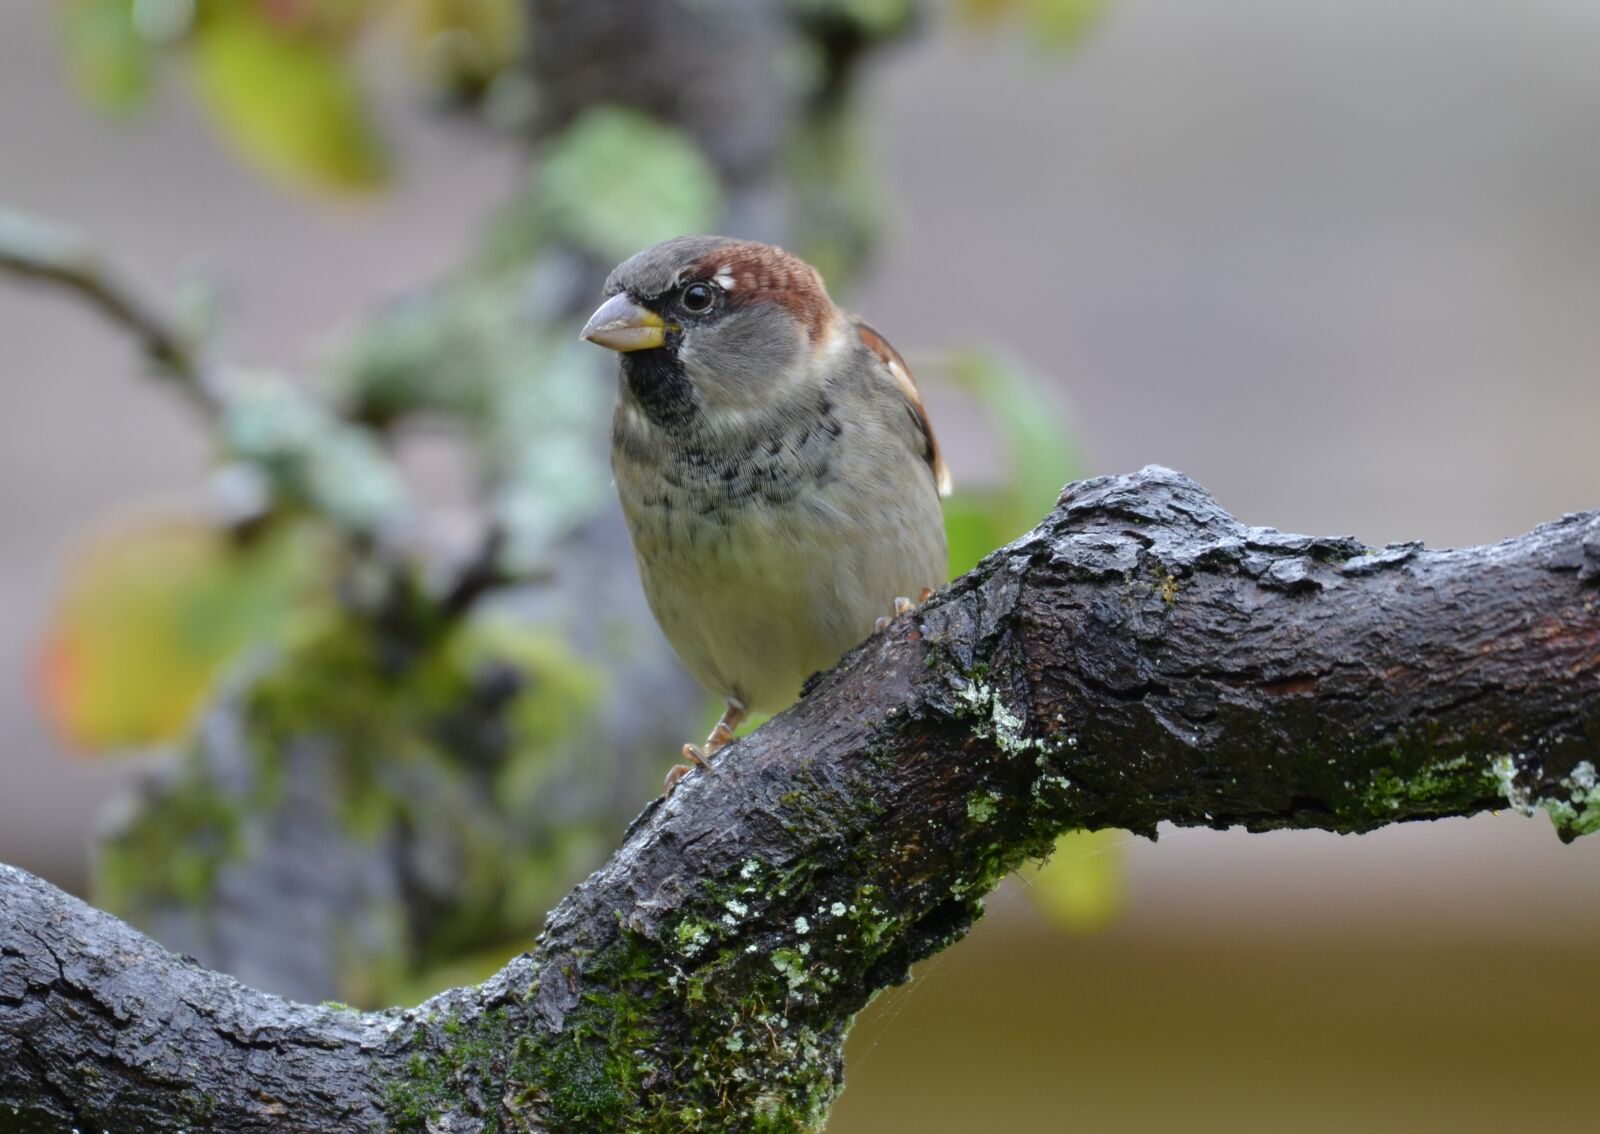 Nikon D5100 sample photo. Bird, sparrow, branch photography